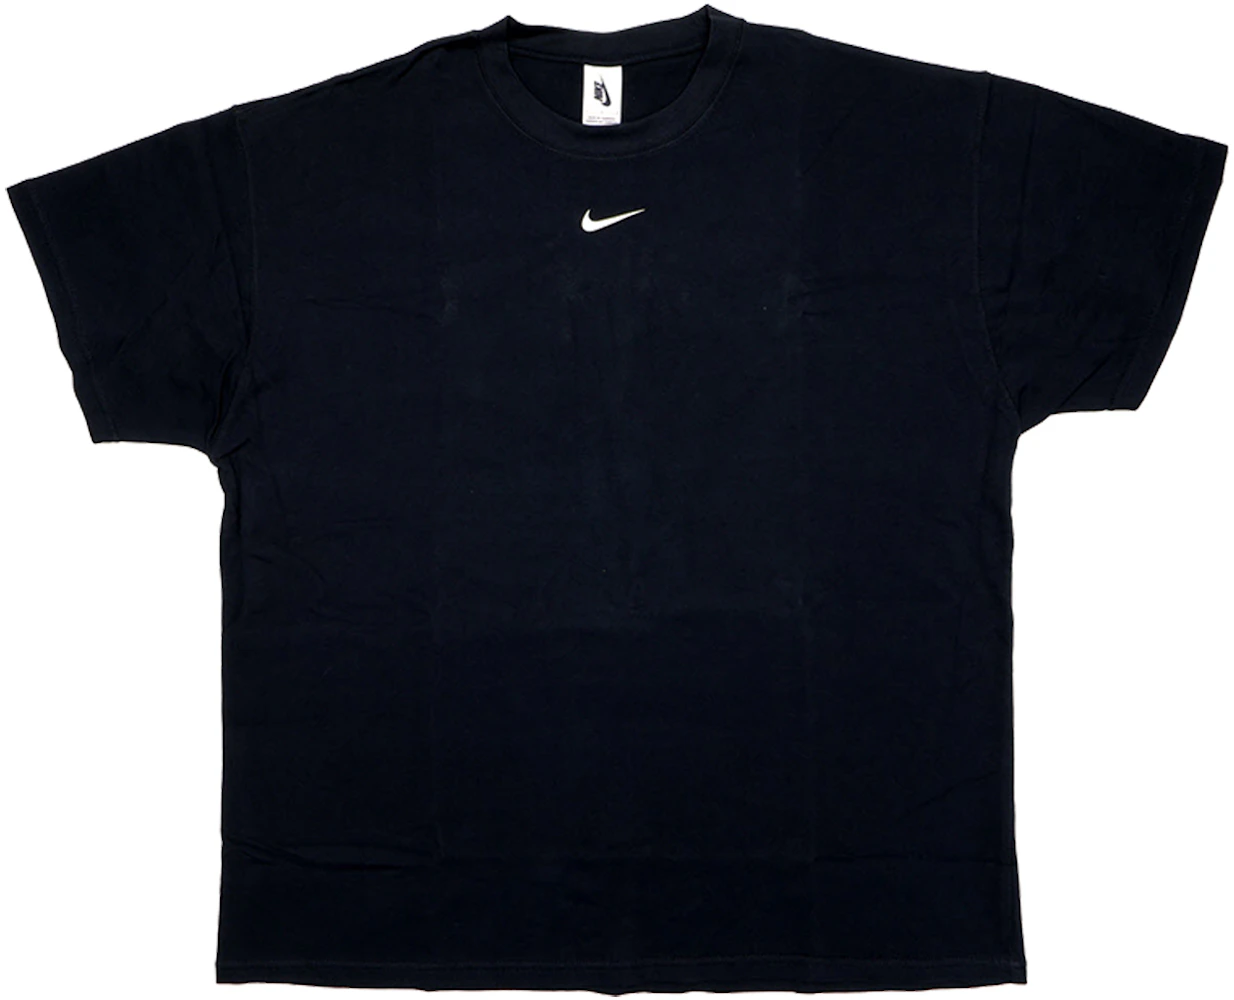 FEAR OF GOD x Nike Air Fear of God T-Shirt Black - FW19 - GB